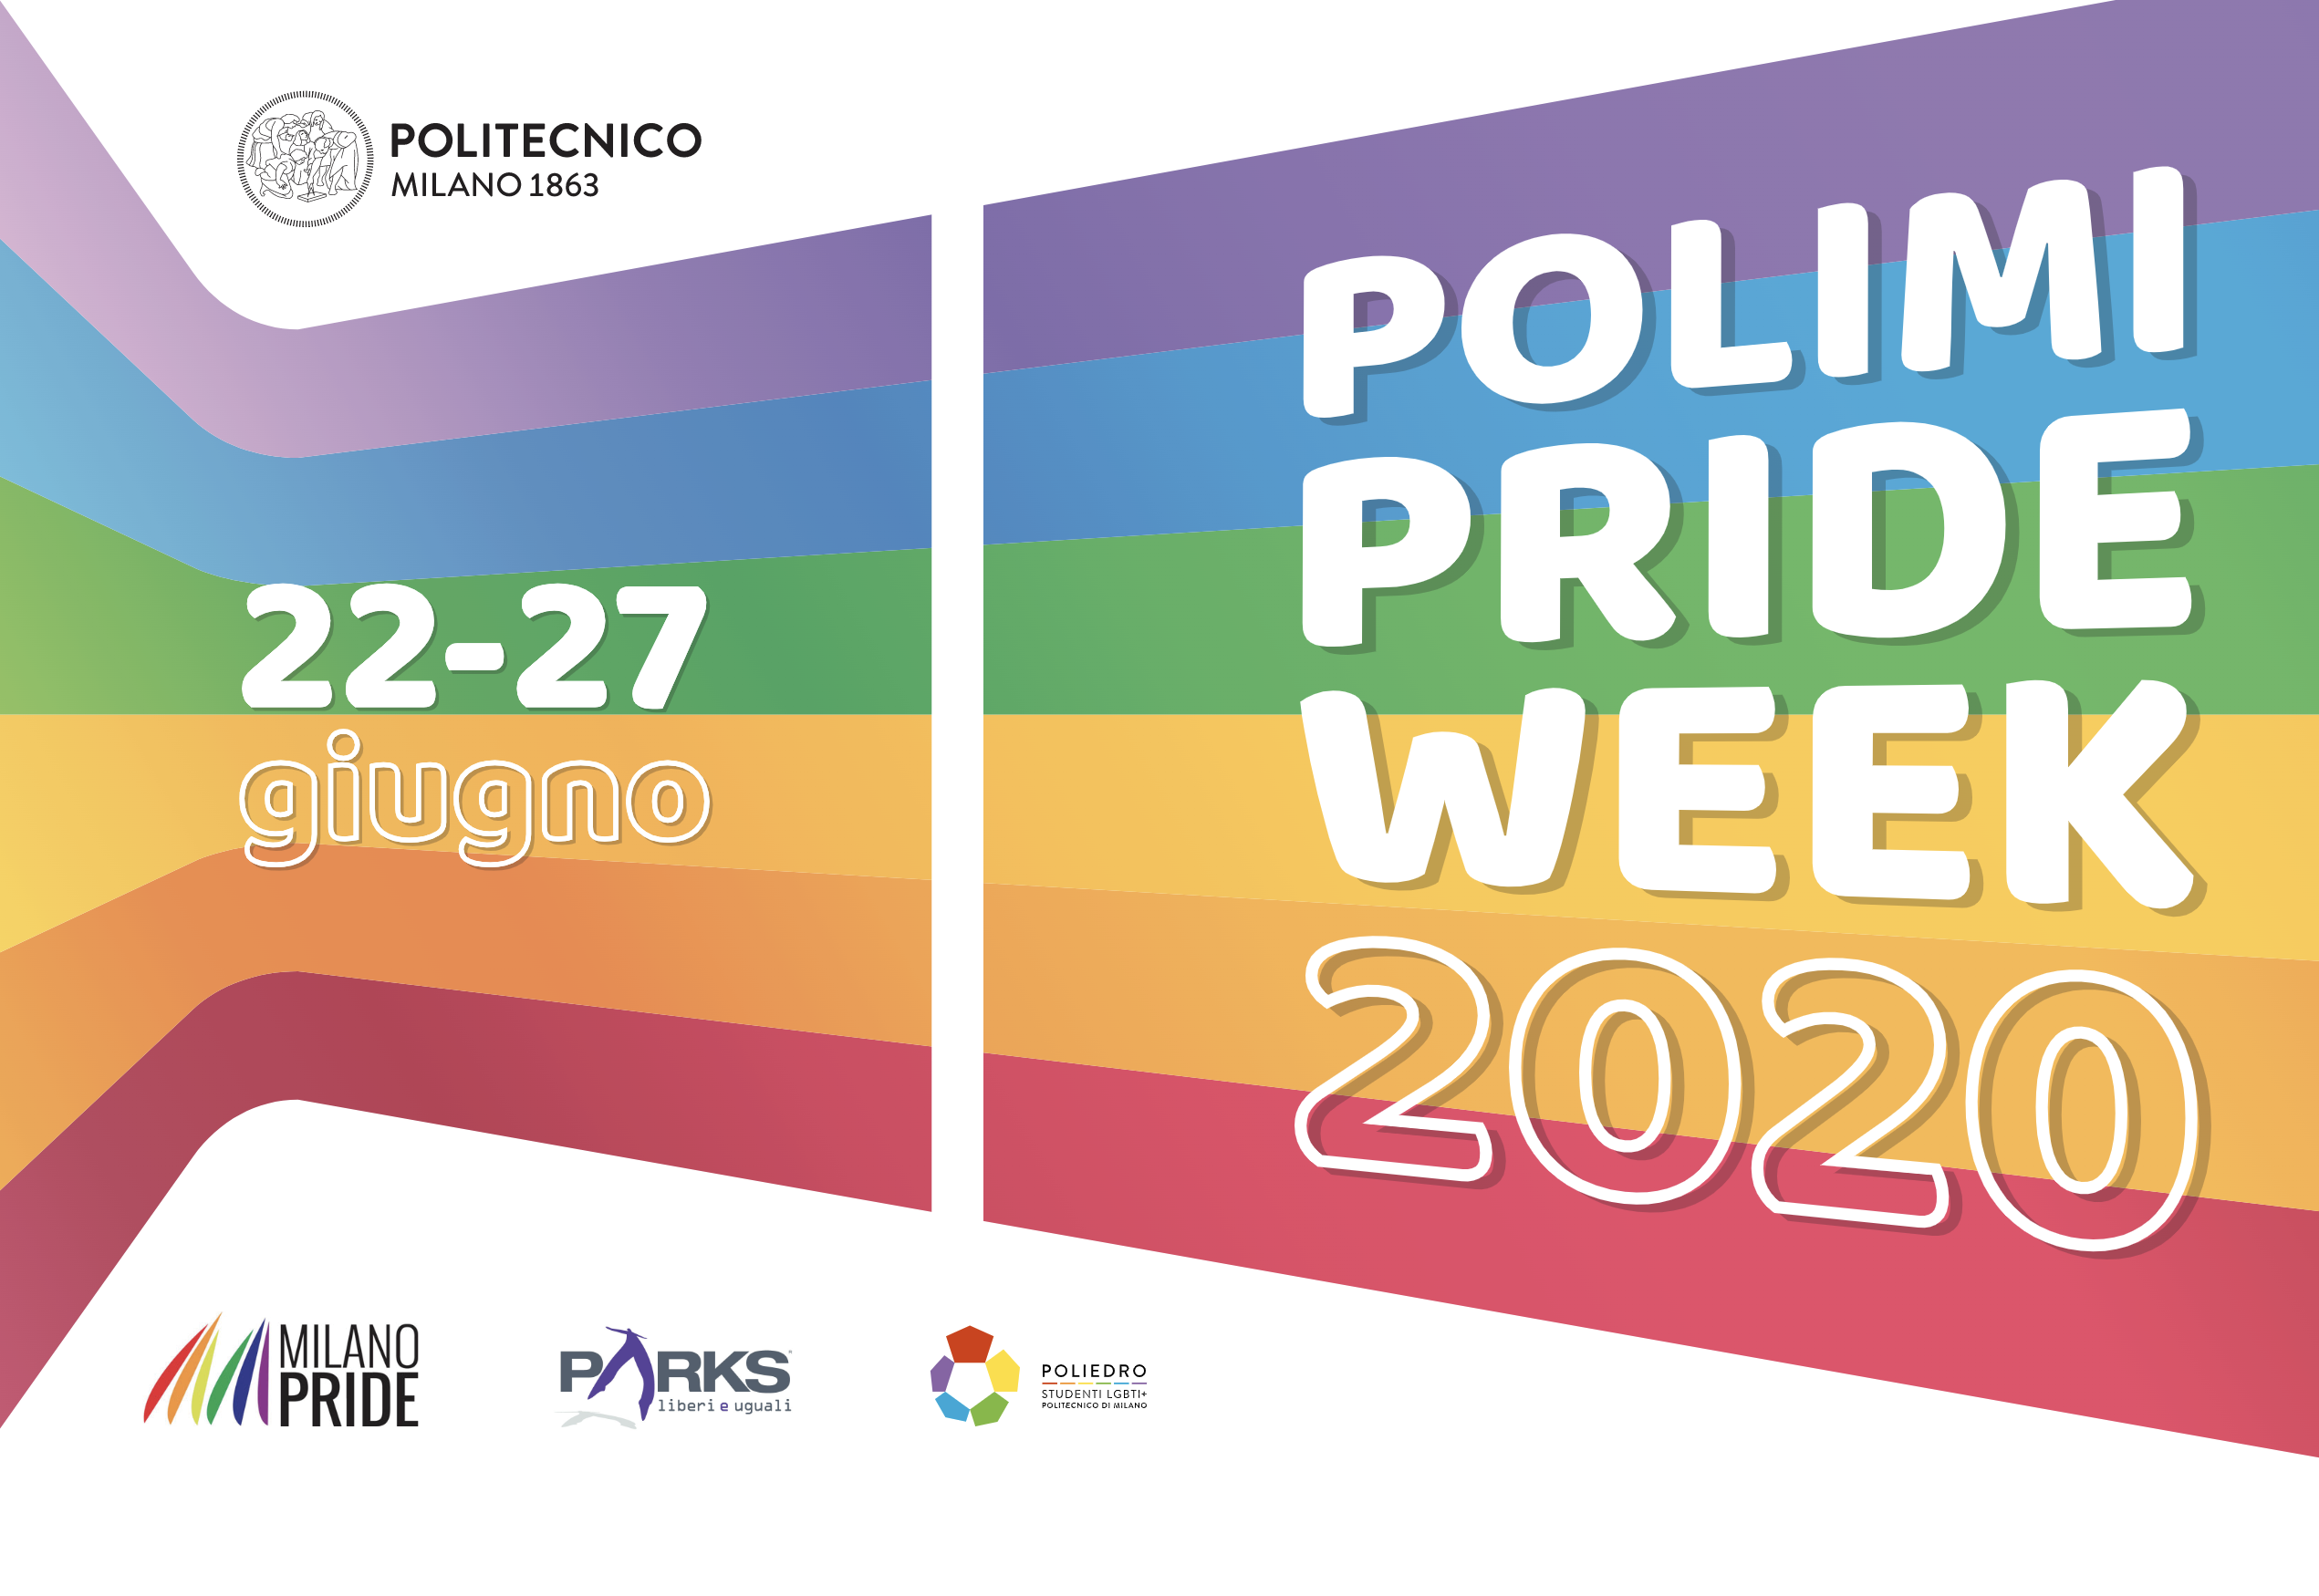 Il manifesto della PoliMi Pride Week